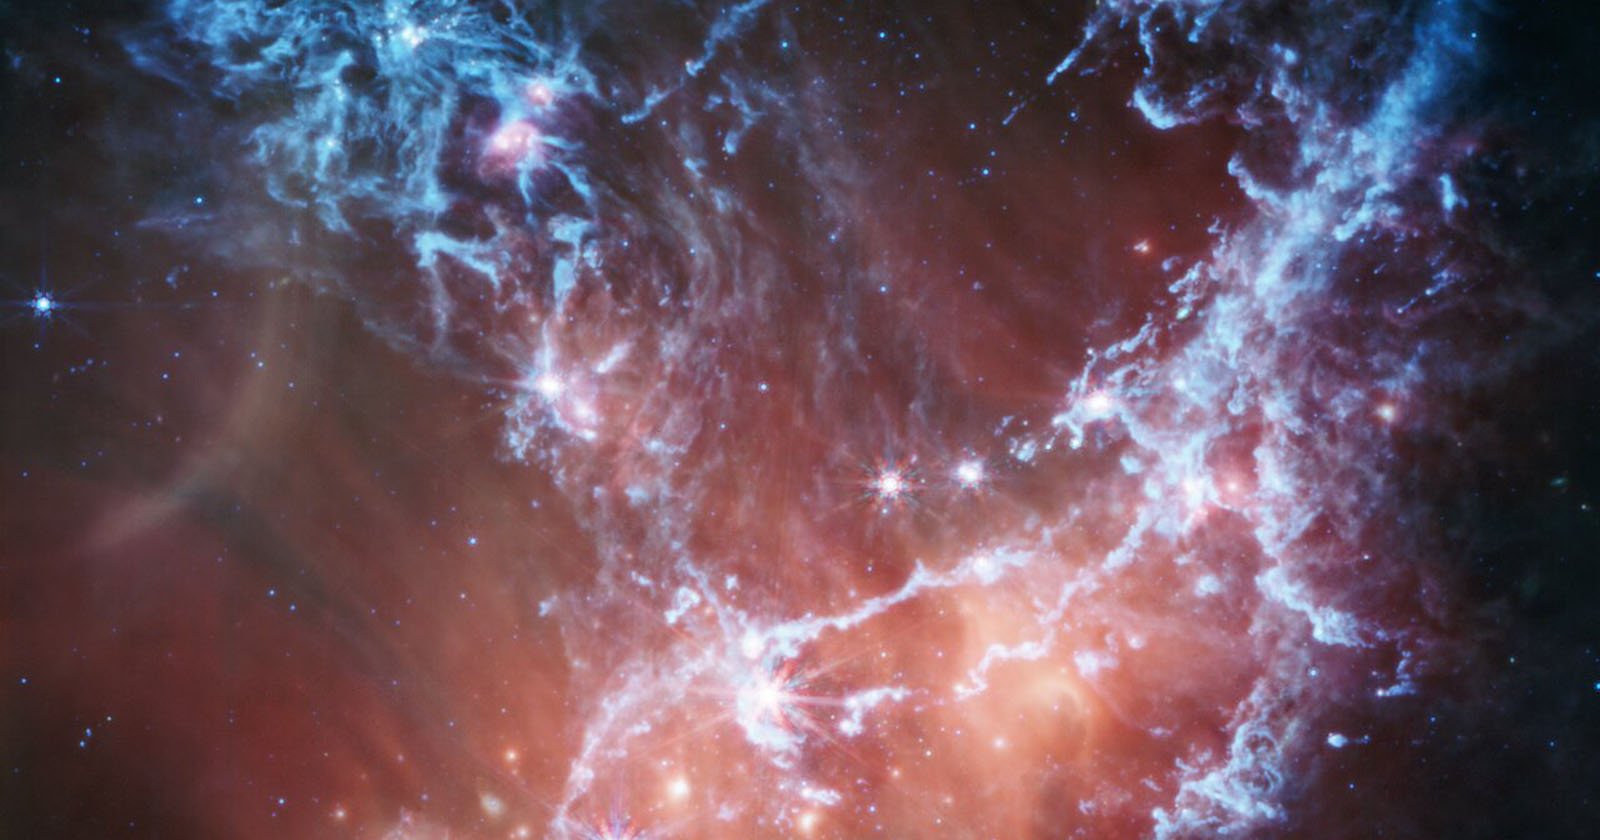  webb space telescope captures ethereal view stellar nursery 